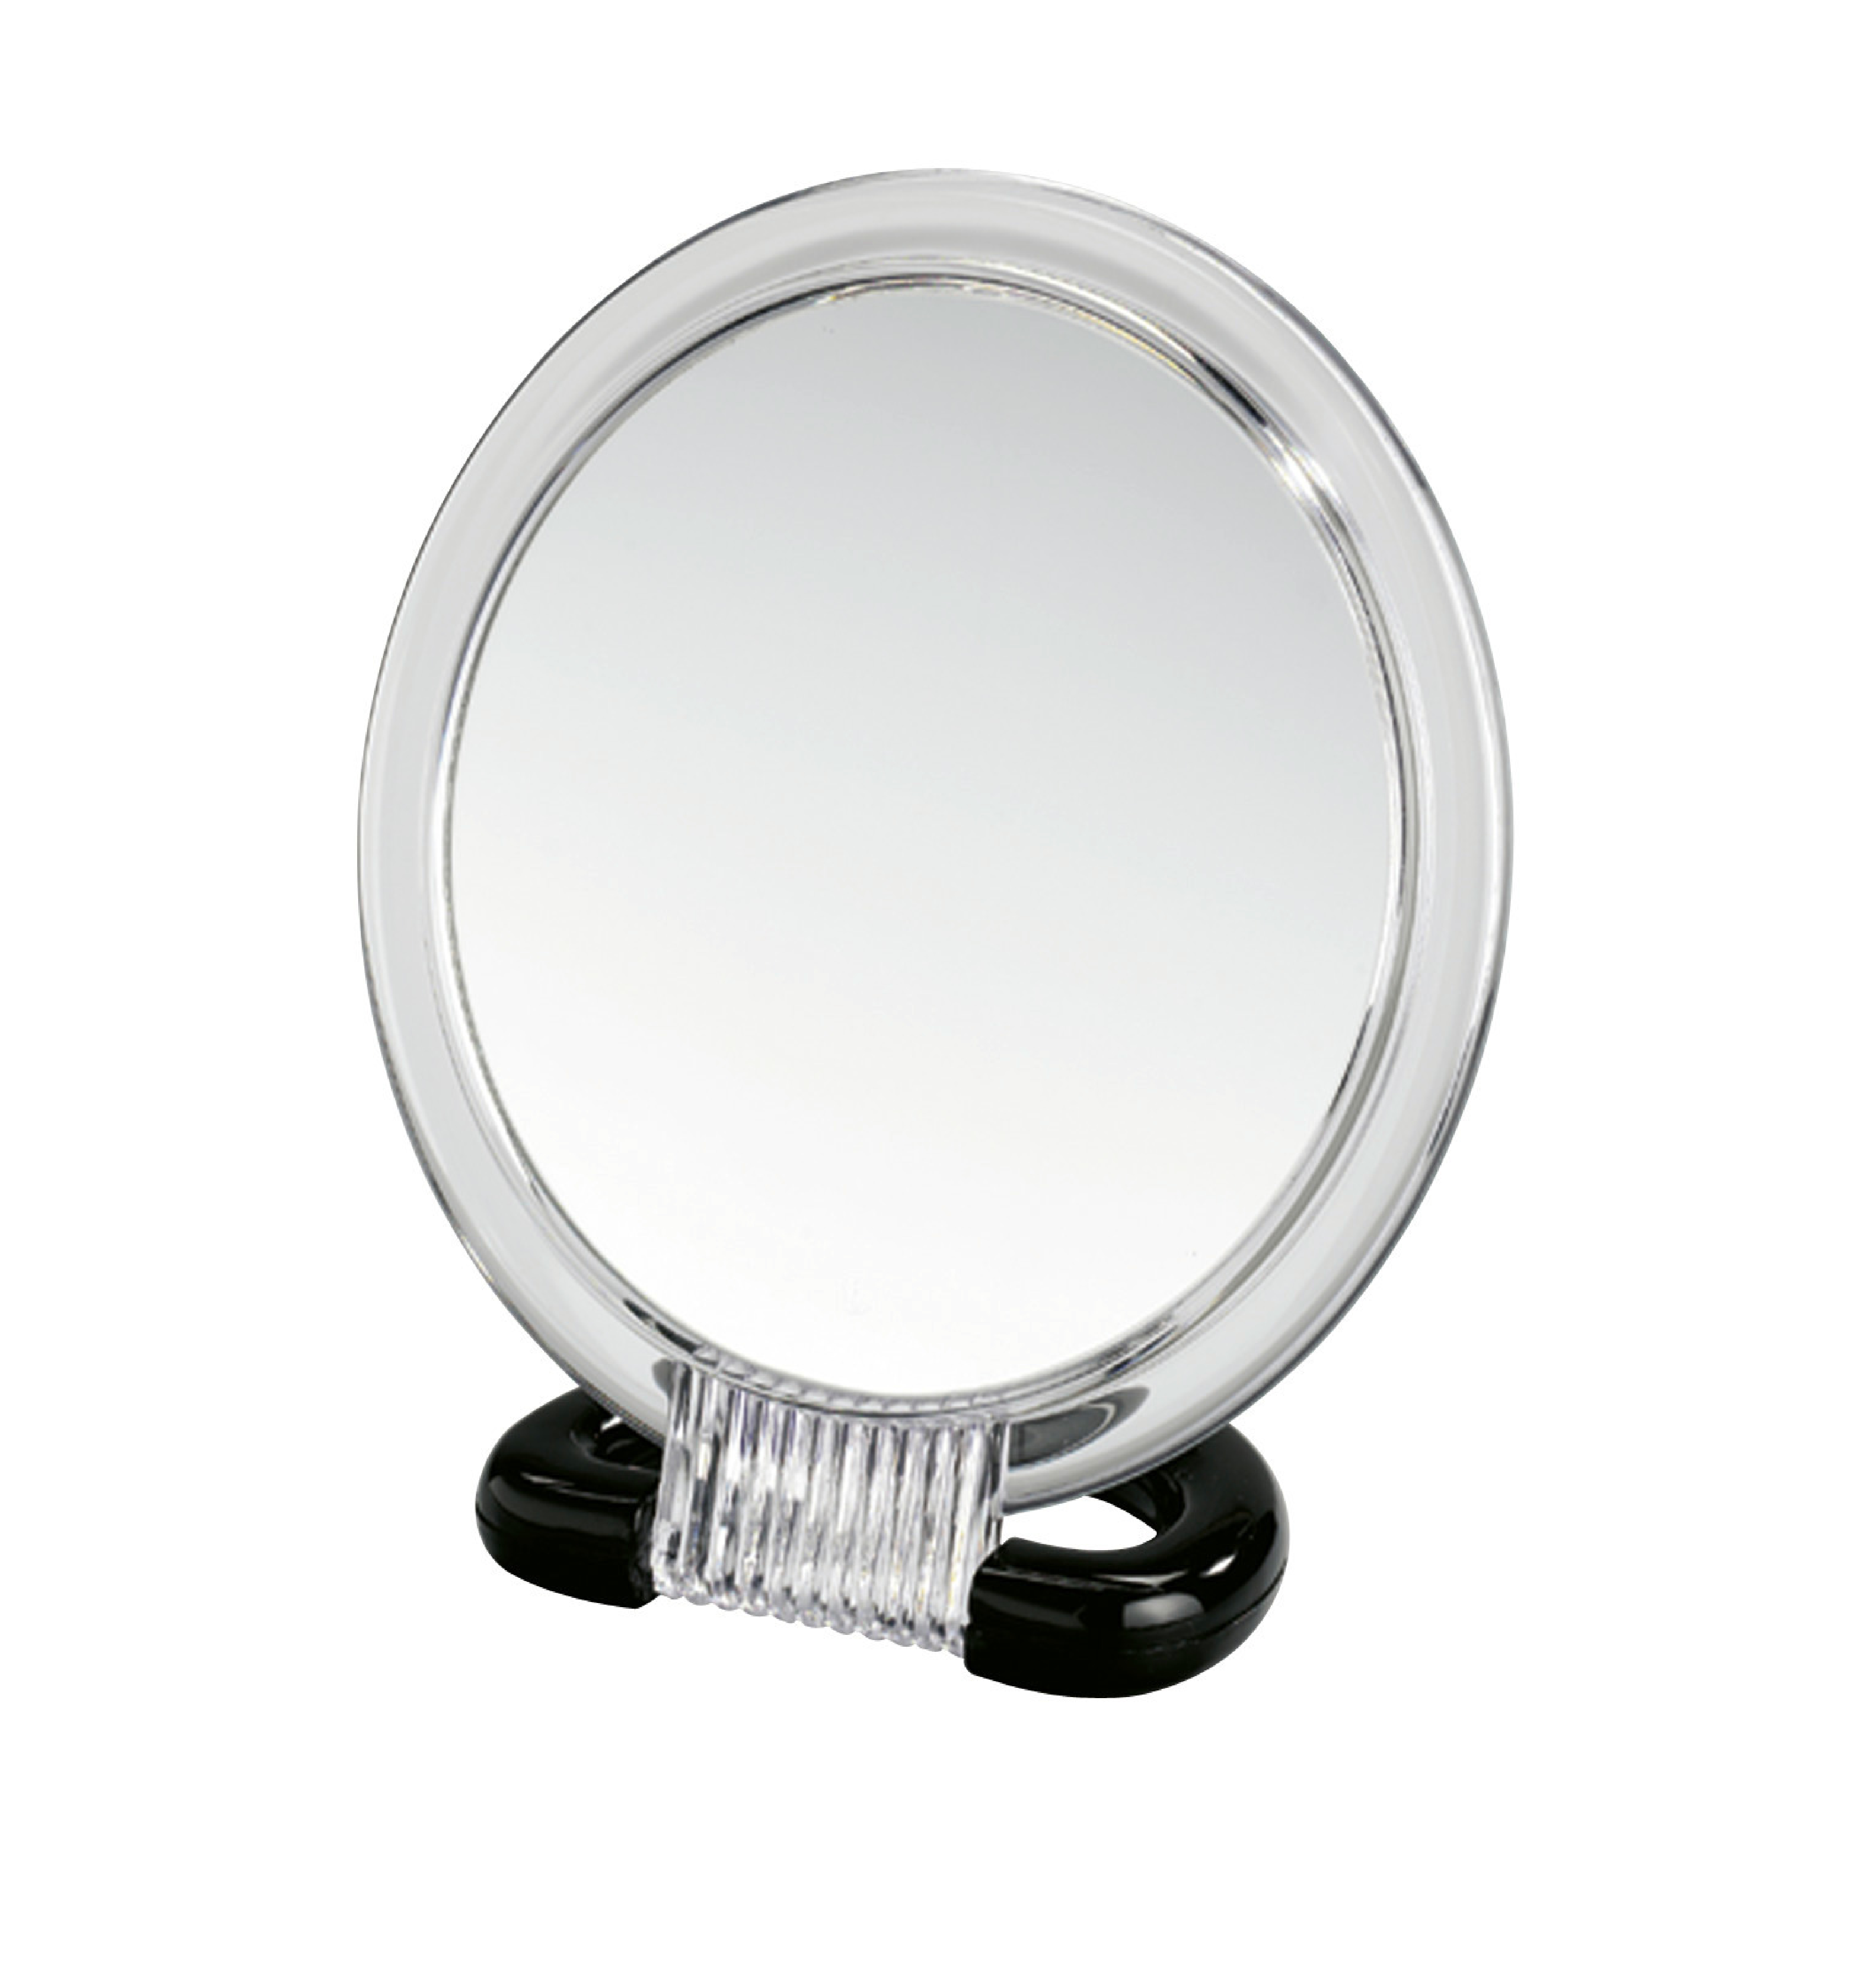 Kosmetik-Stand- und Handspiegel Maße (B x H x T): 15,5 x 17 x 7,5 cm, Spiegelfläche (B/H): Ø 12,5 cm